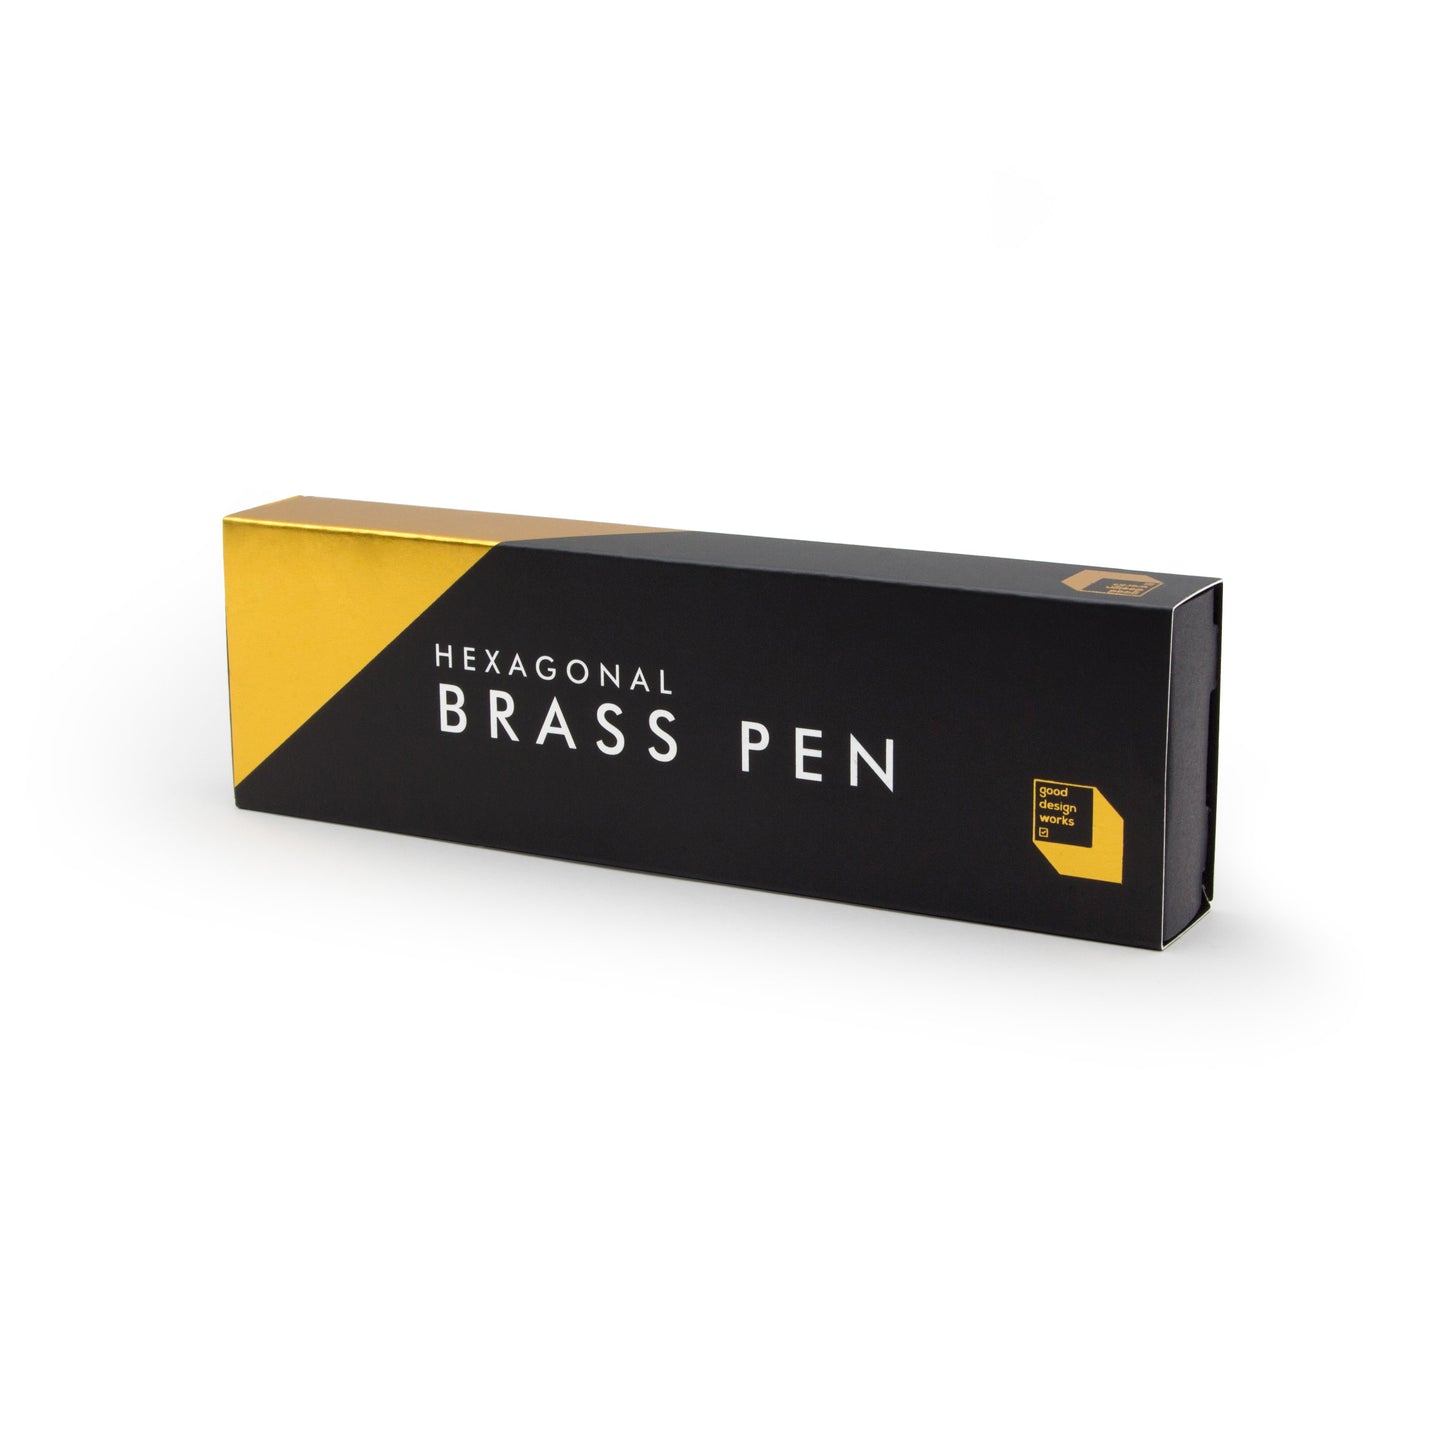 Hexagonal Brass Pen